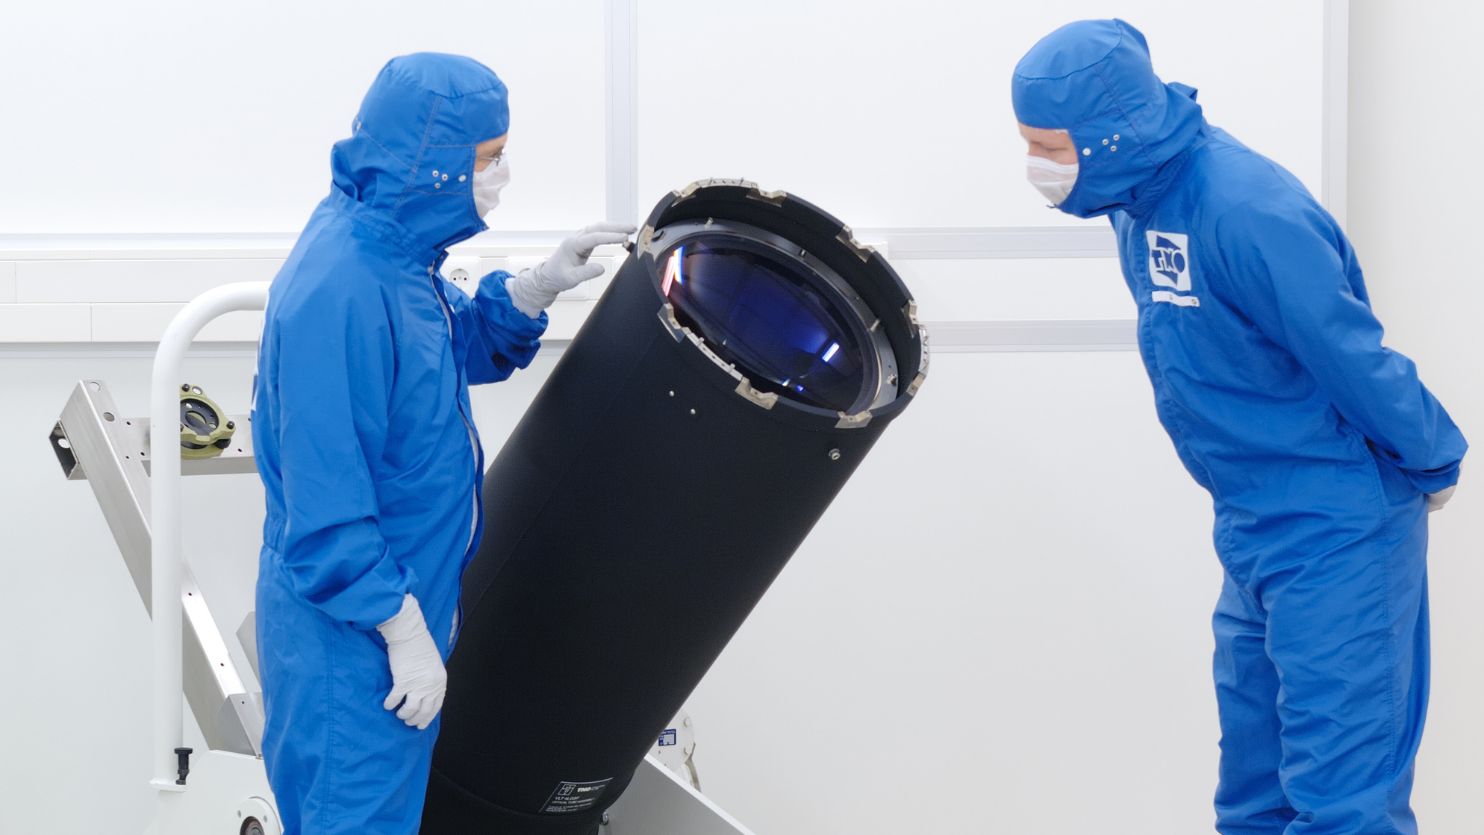 VLT Laser launch telescope